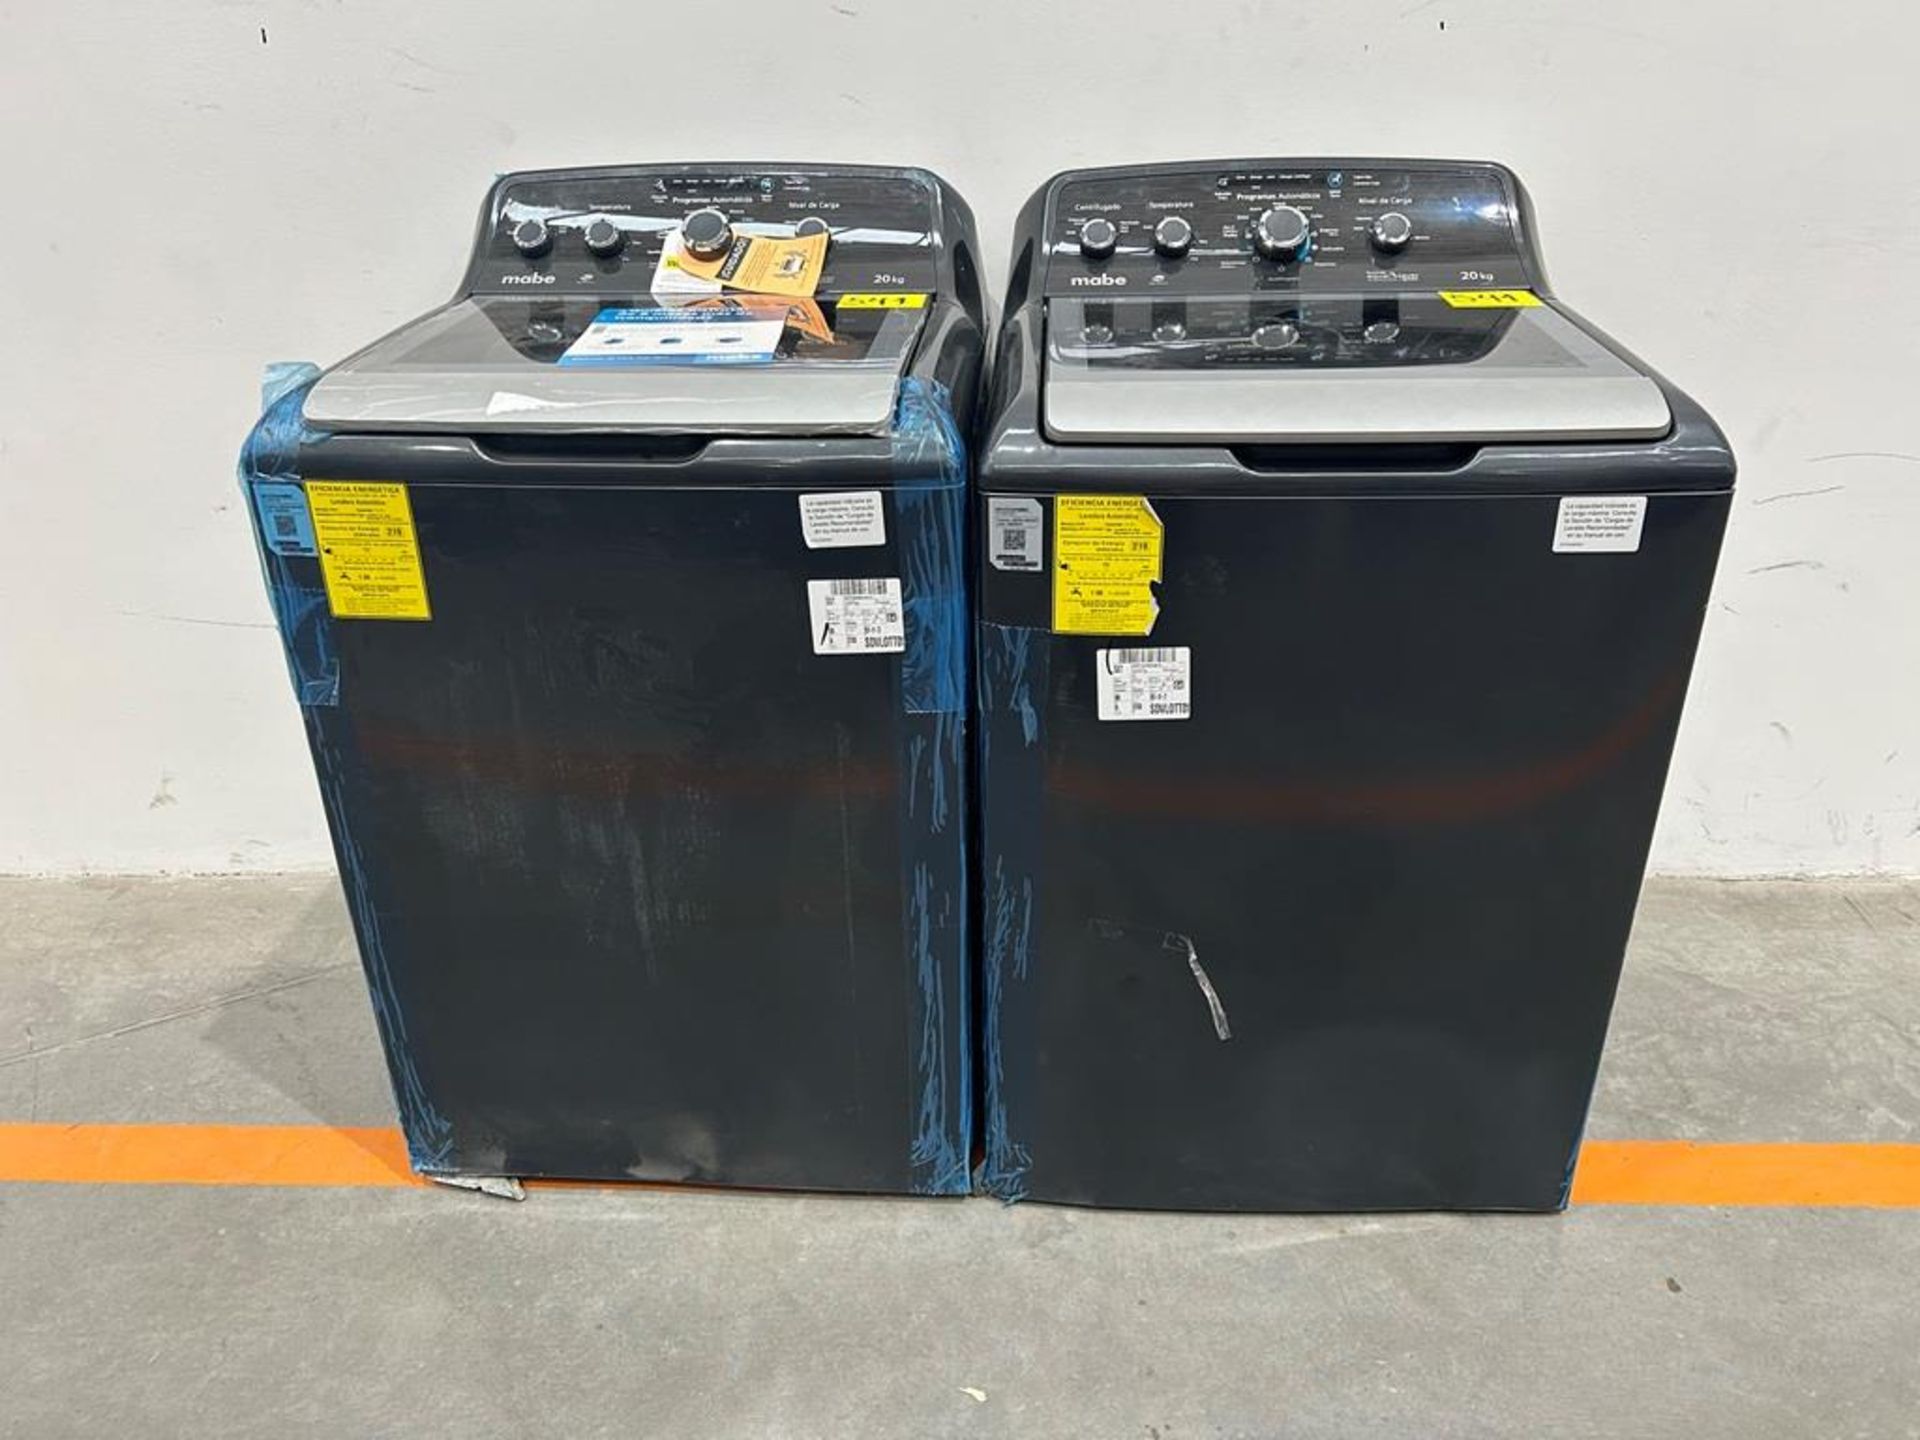 Lote de 2 lavadoras contiene: 1 Lavadora de 20KG Marca MABE, Modelo LMX70214WDAB00, Serie S09985, C